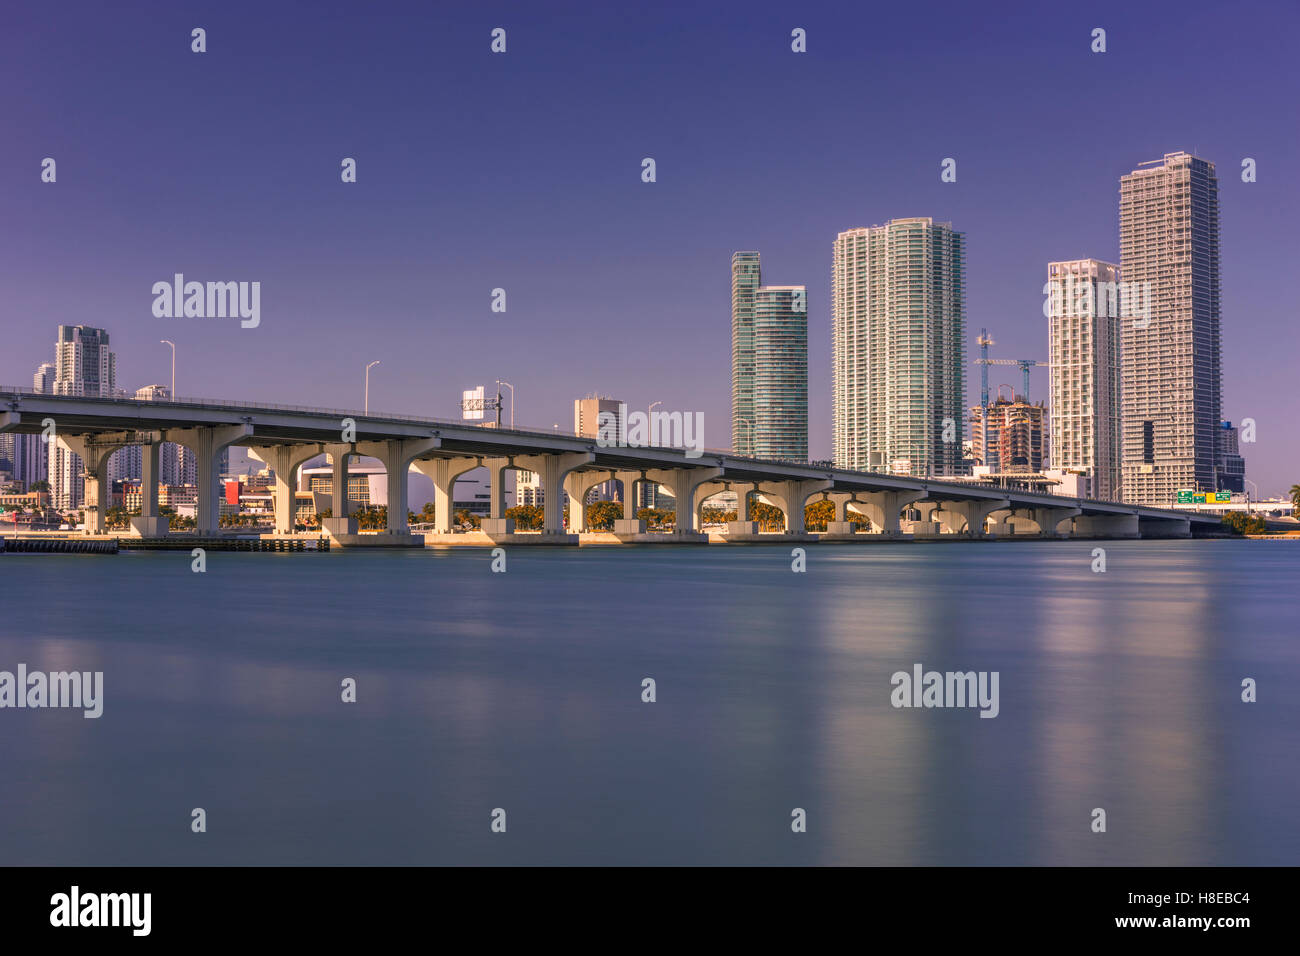 Le centre-ville de Miami Skyline Banque D'Images